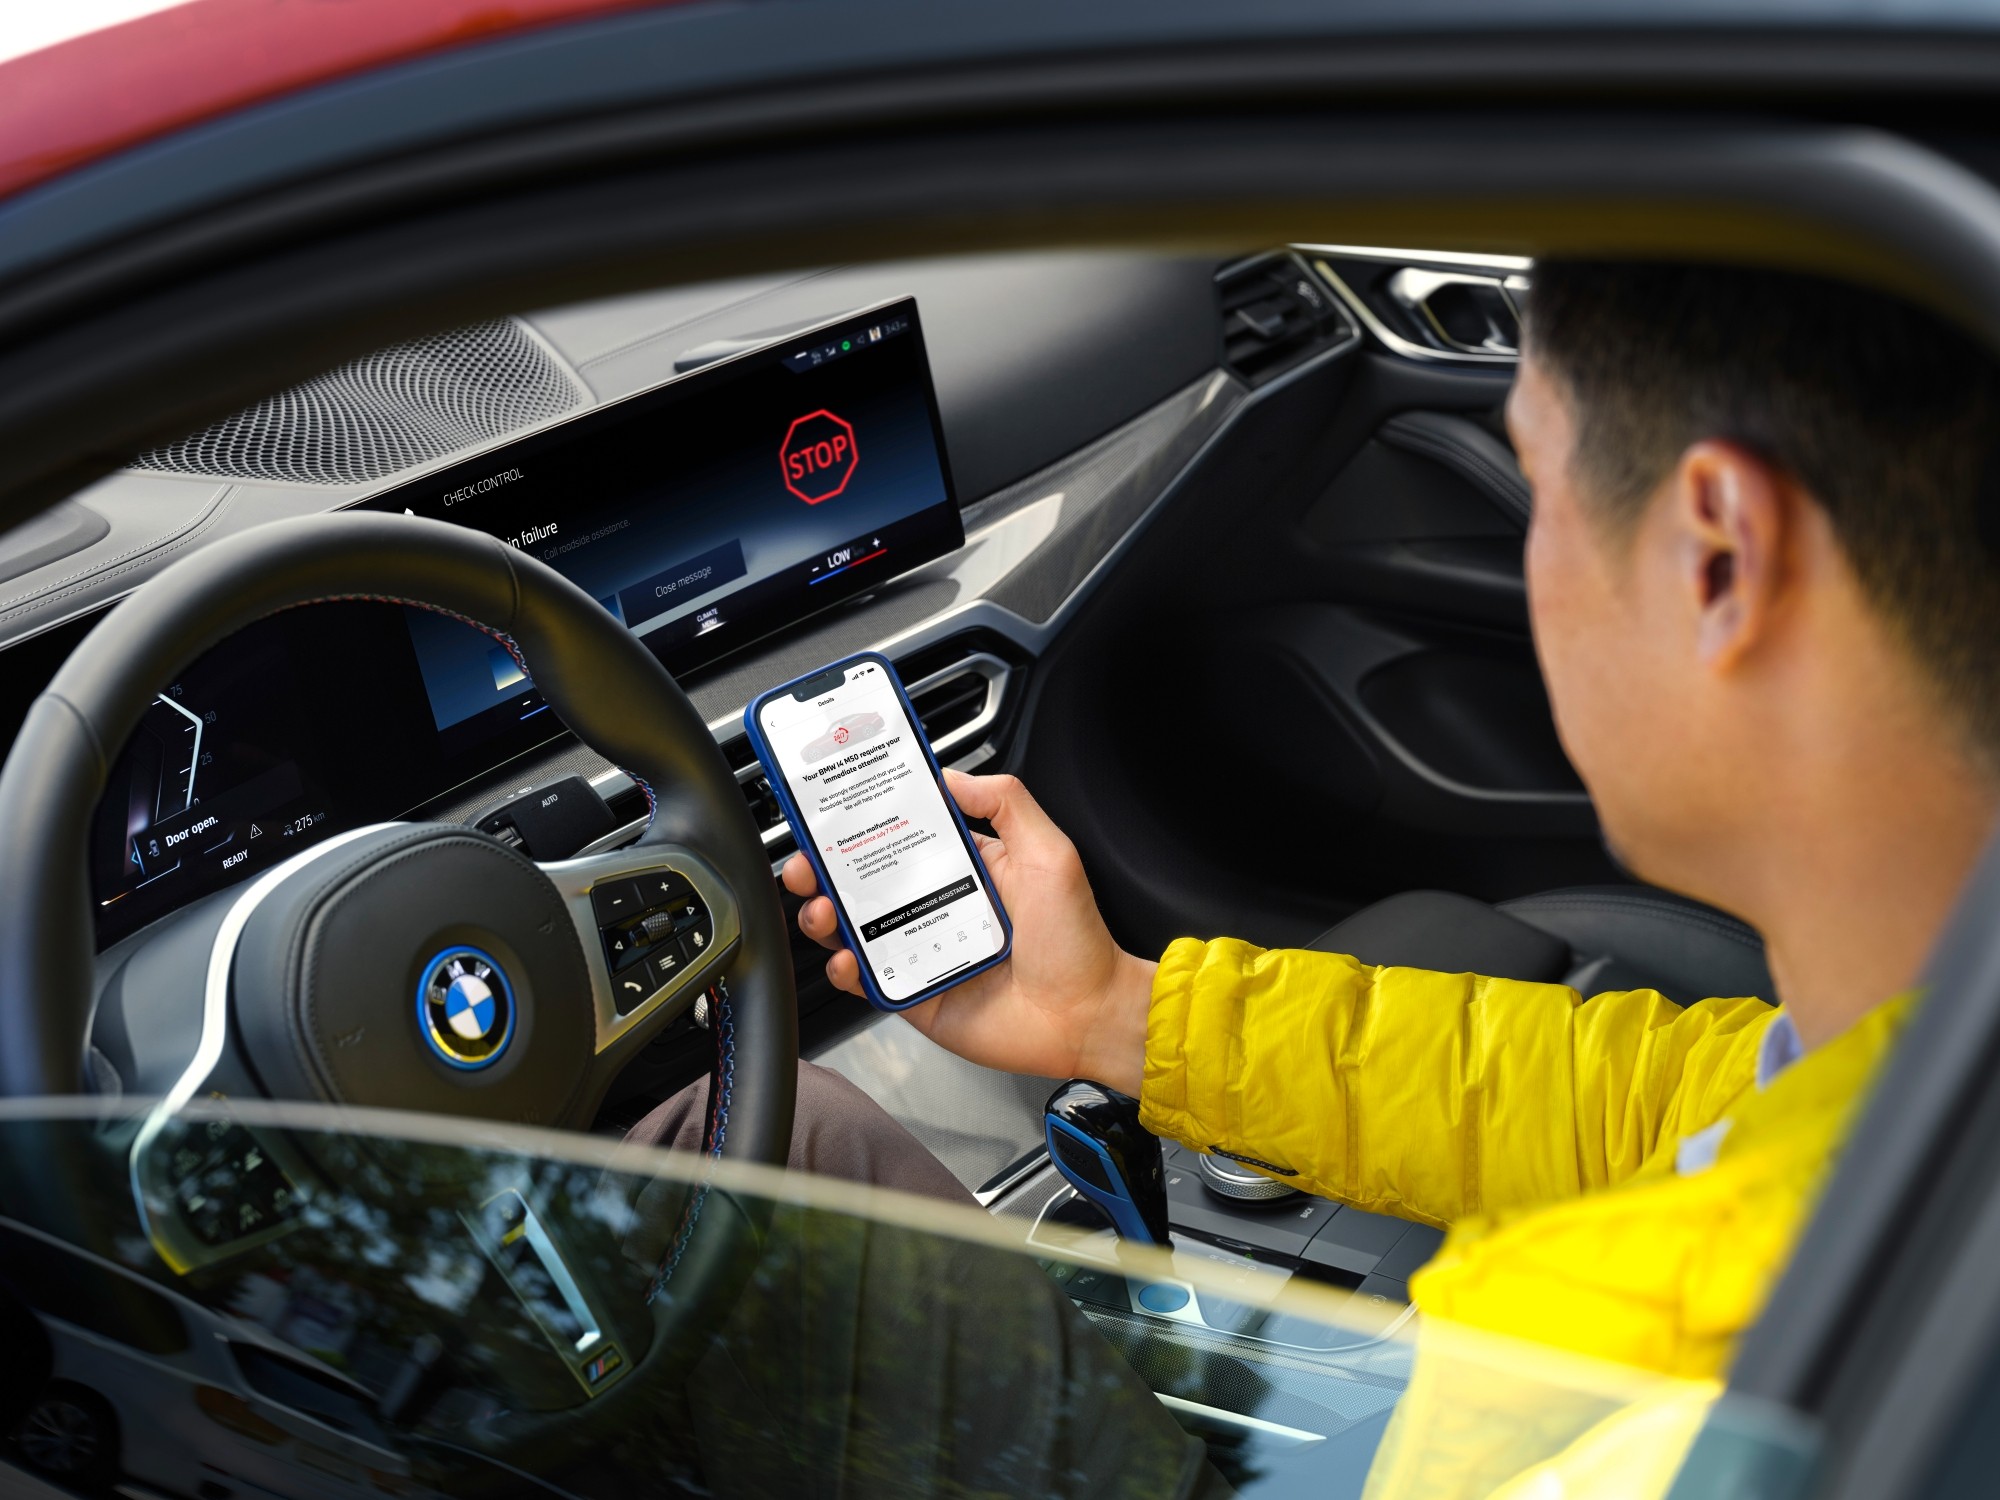 BMW は、AI を活用したプロアクティブなケアでサービスの向上を目指しています